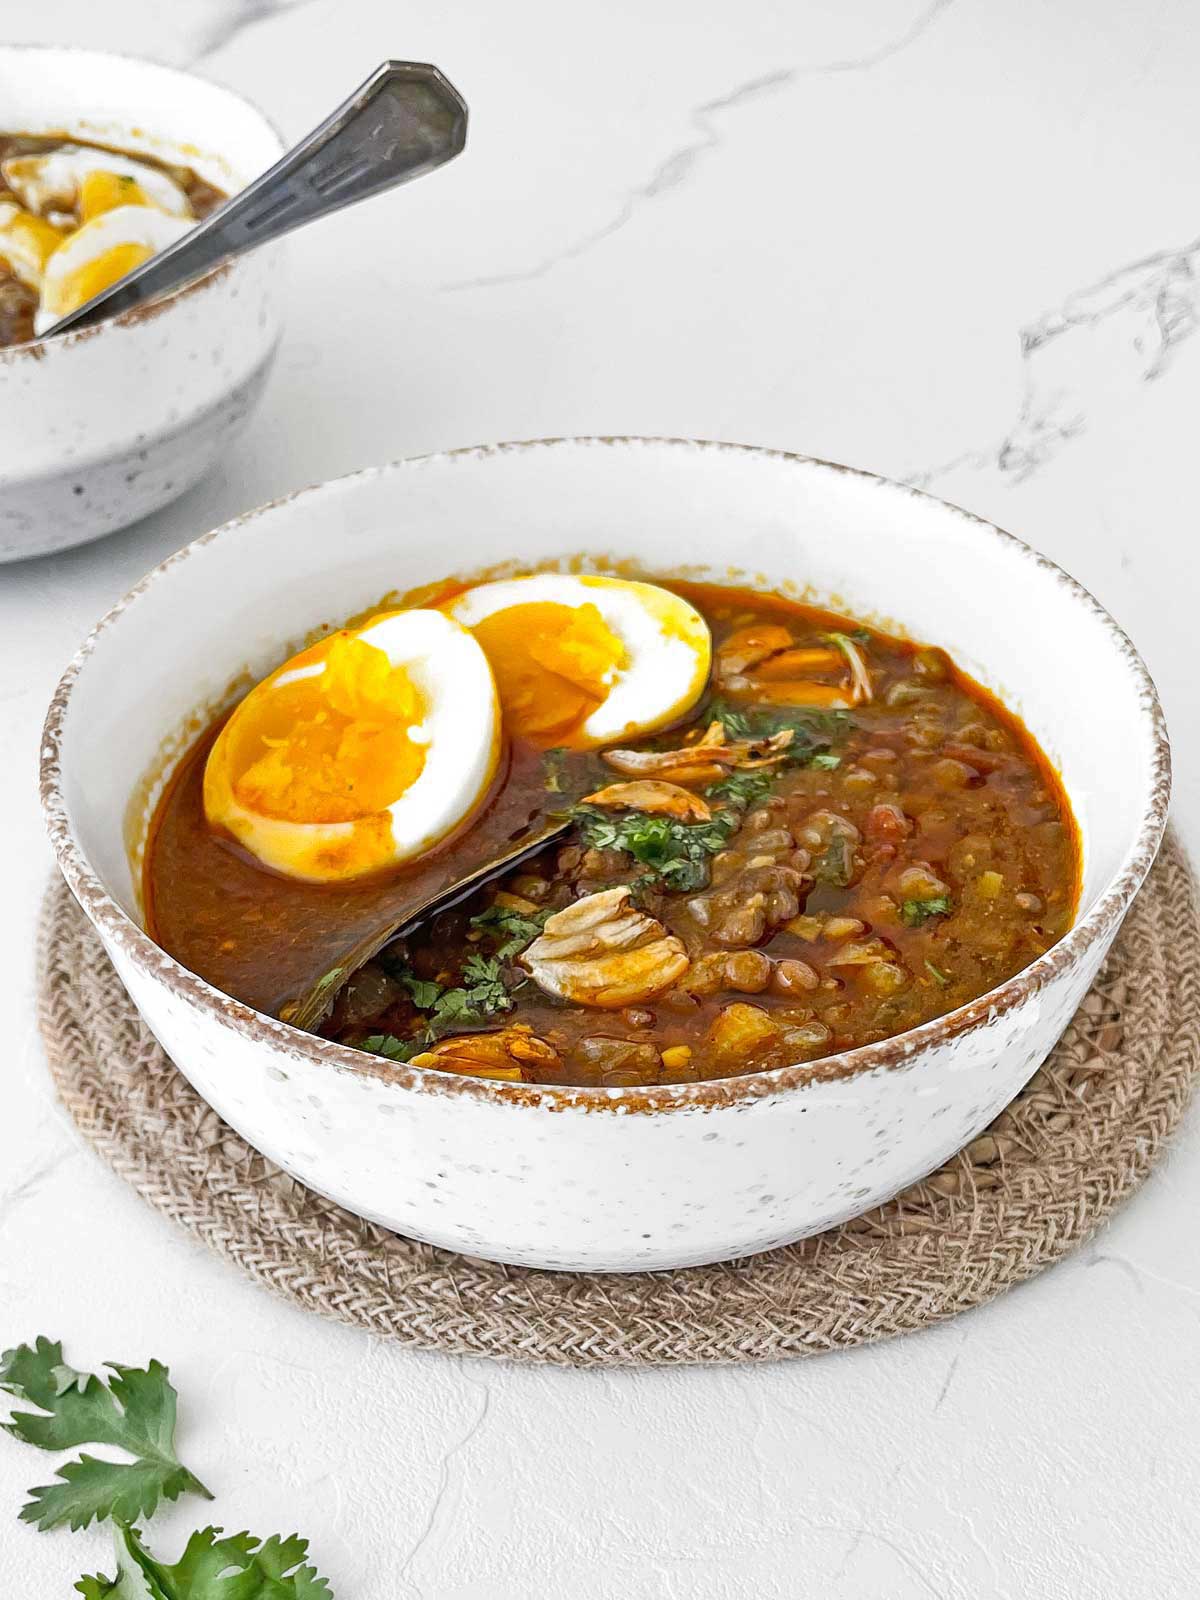 Two bowls of lentil soup.